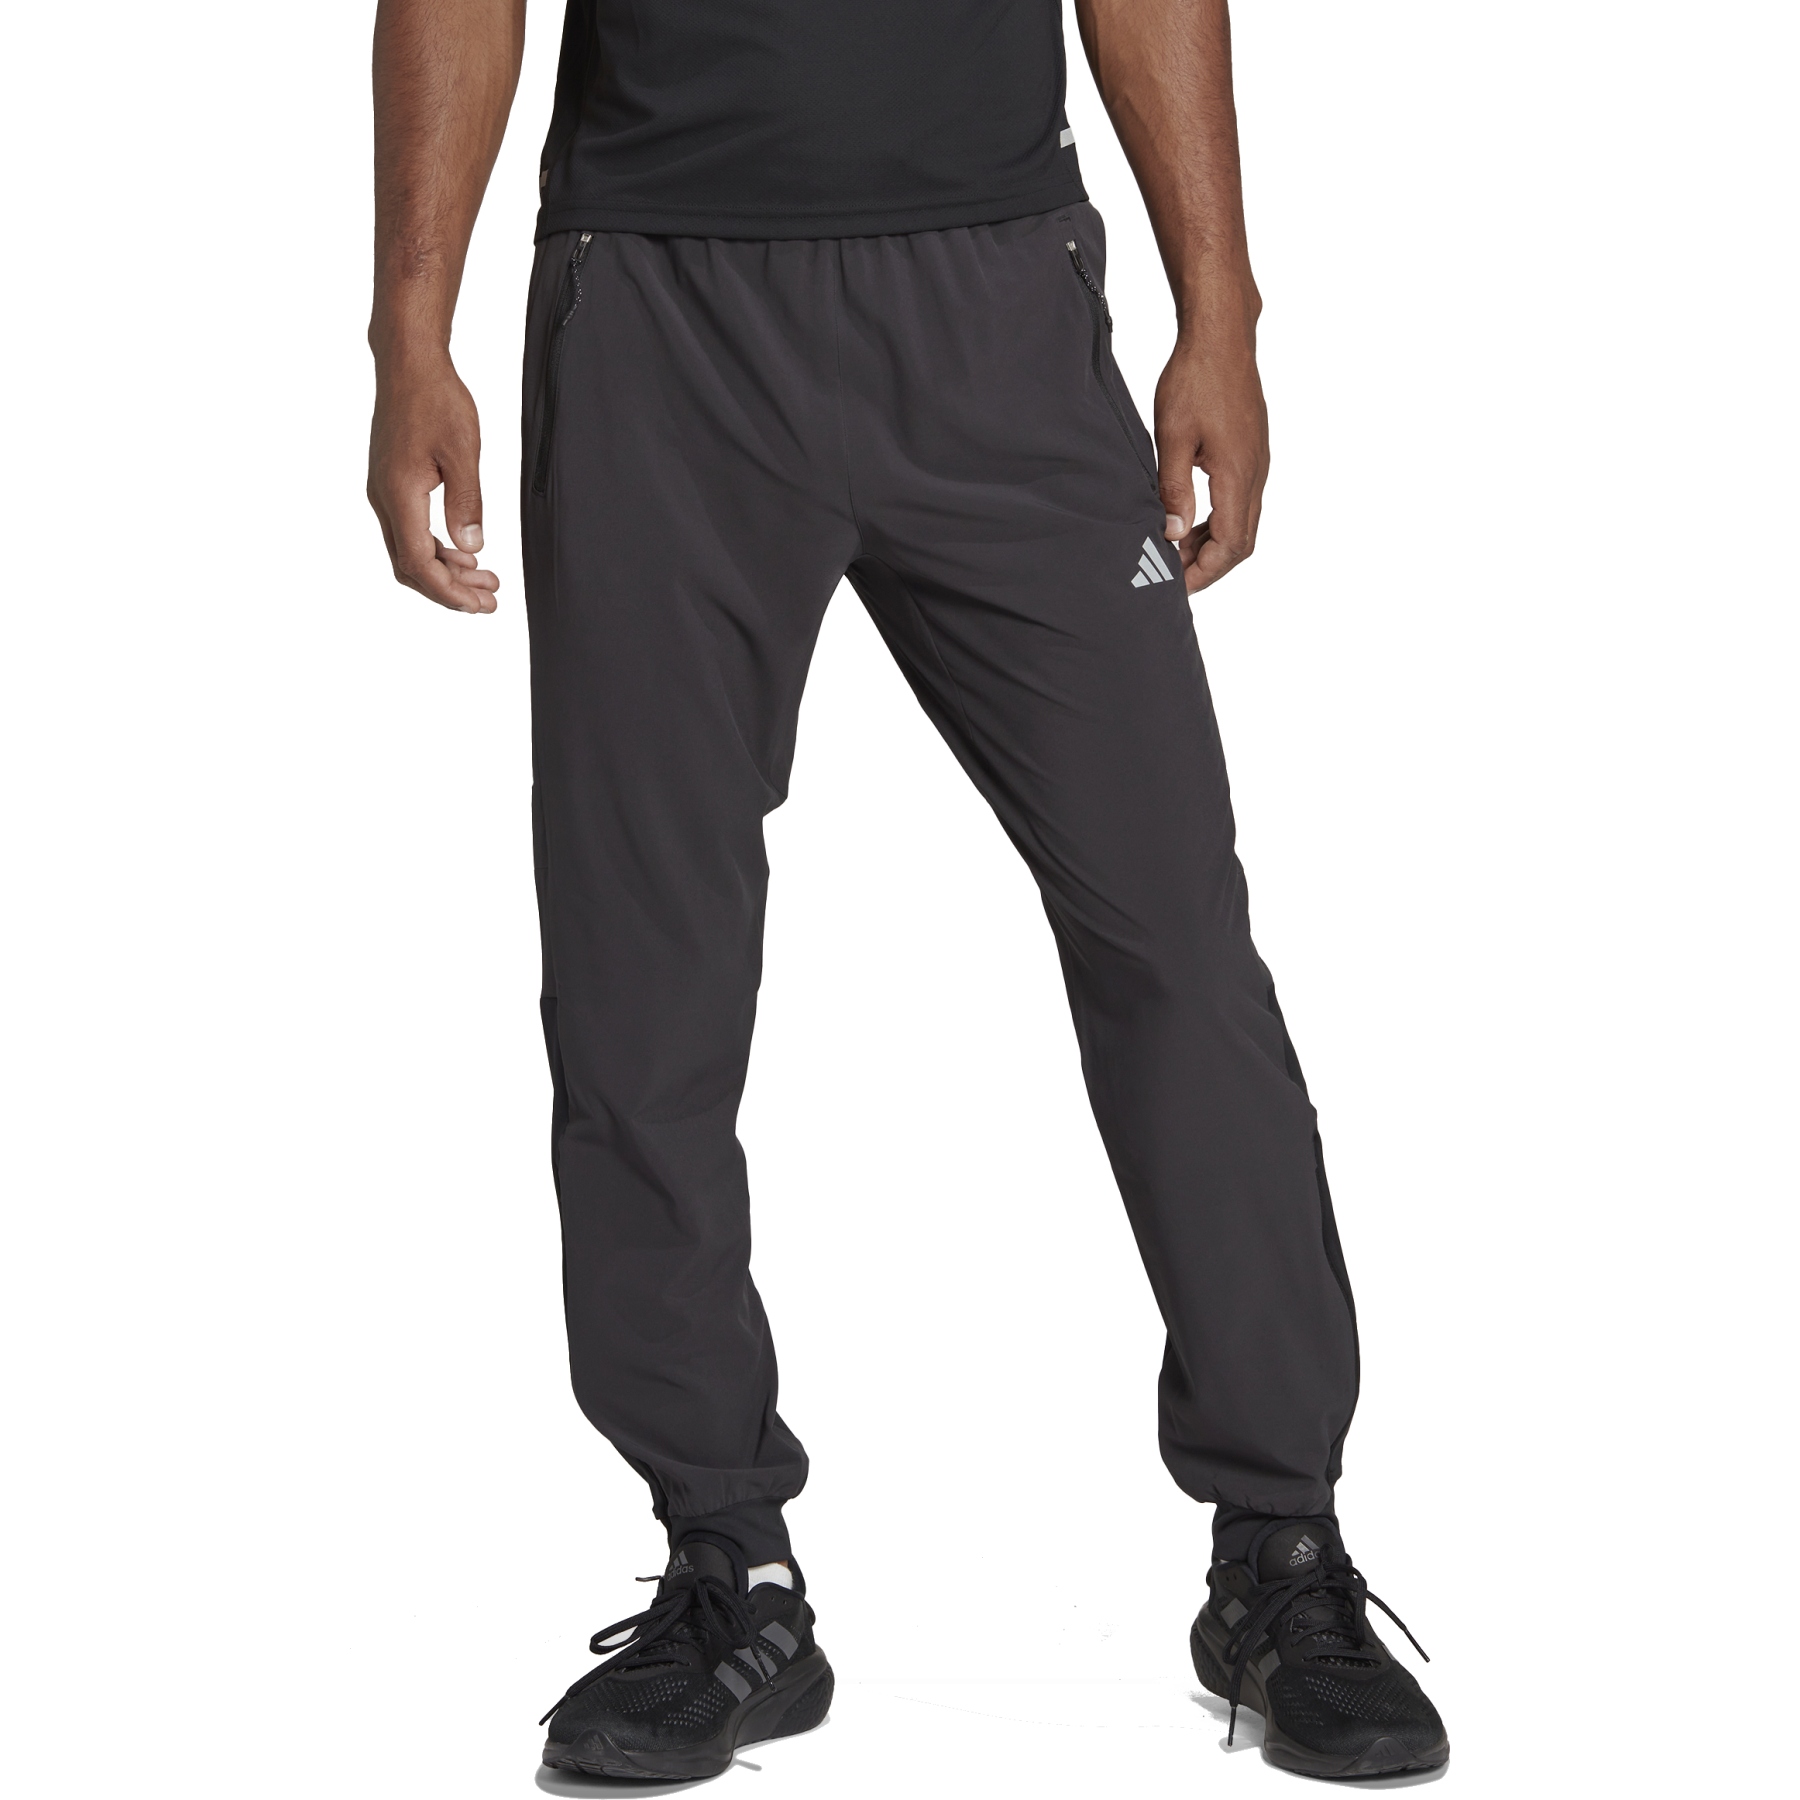 Mario ✪ (@rioxsosa) | Adidas track pants outfit, Adidas sweatpants outfit,  Adidas outfit men